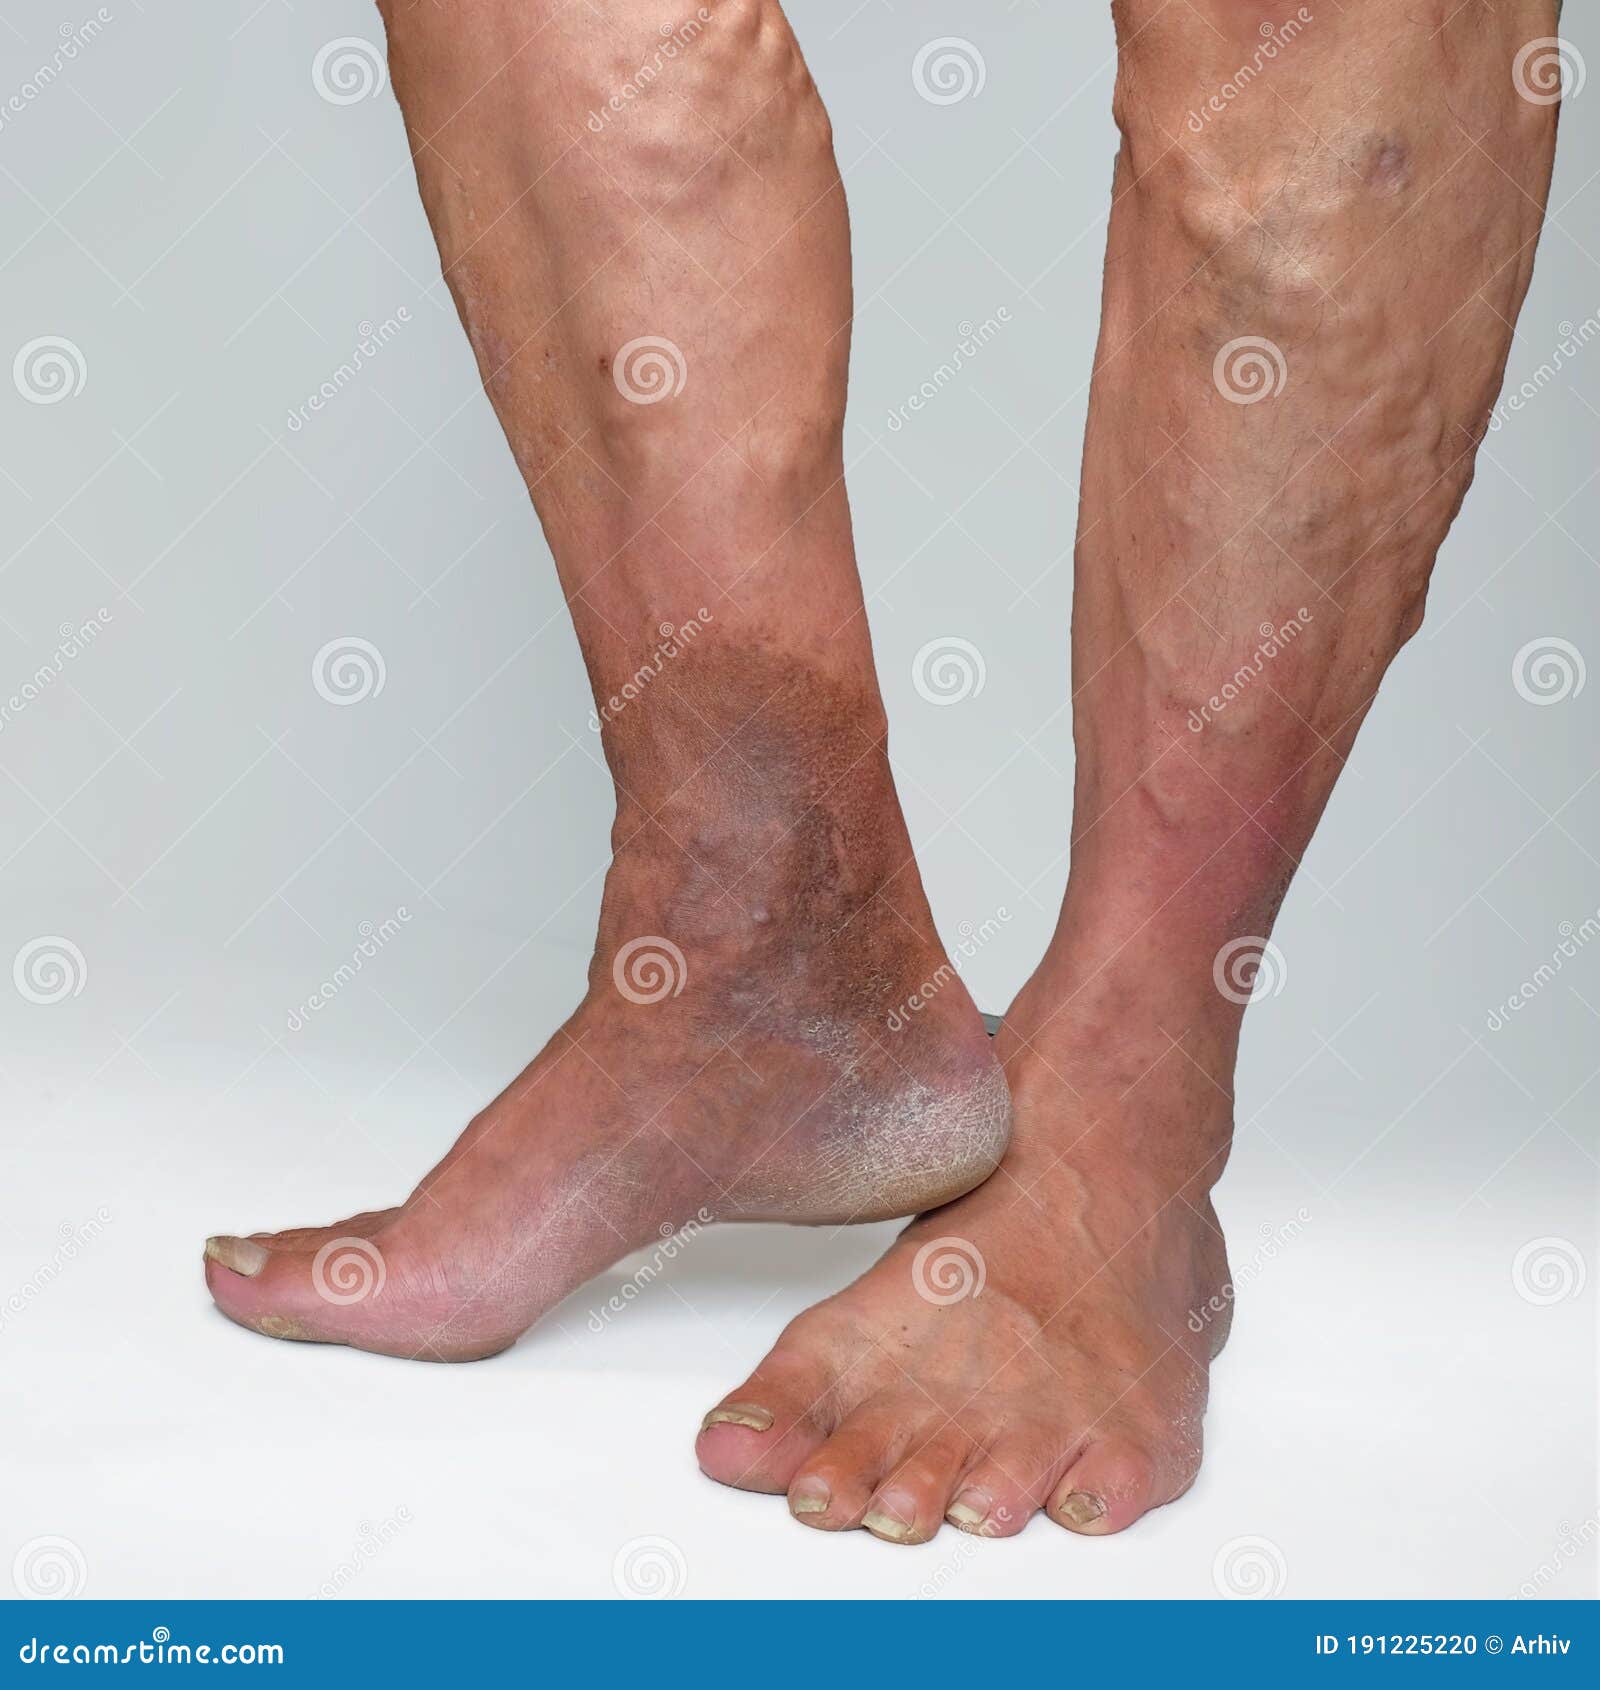 venele varicoase pe preul tratamentului cu picioarele depilator i vene varicoase